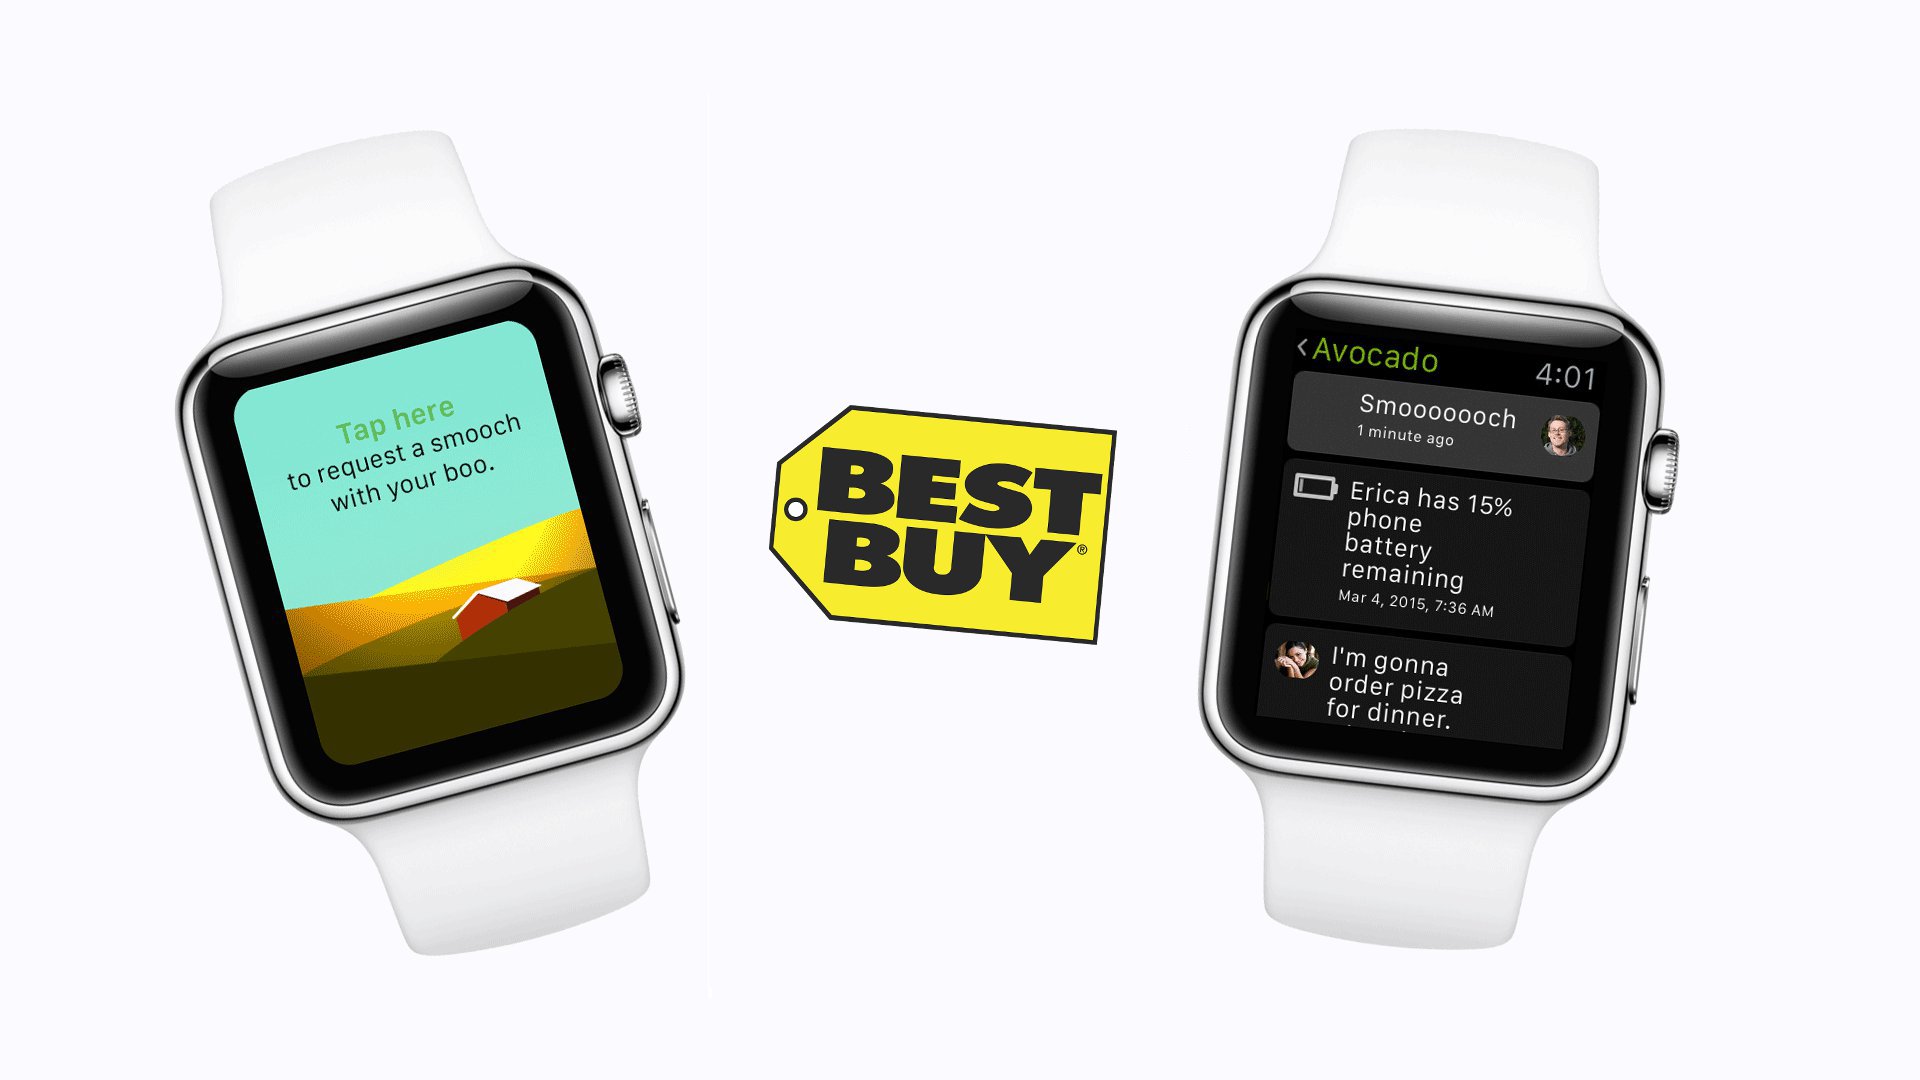 Apple Watch - Best Buy